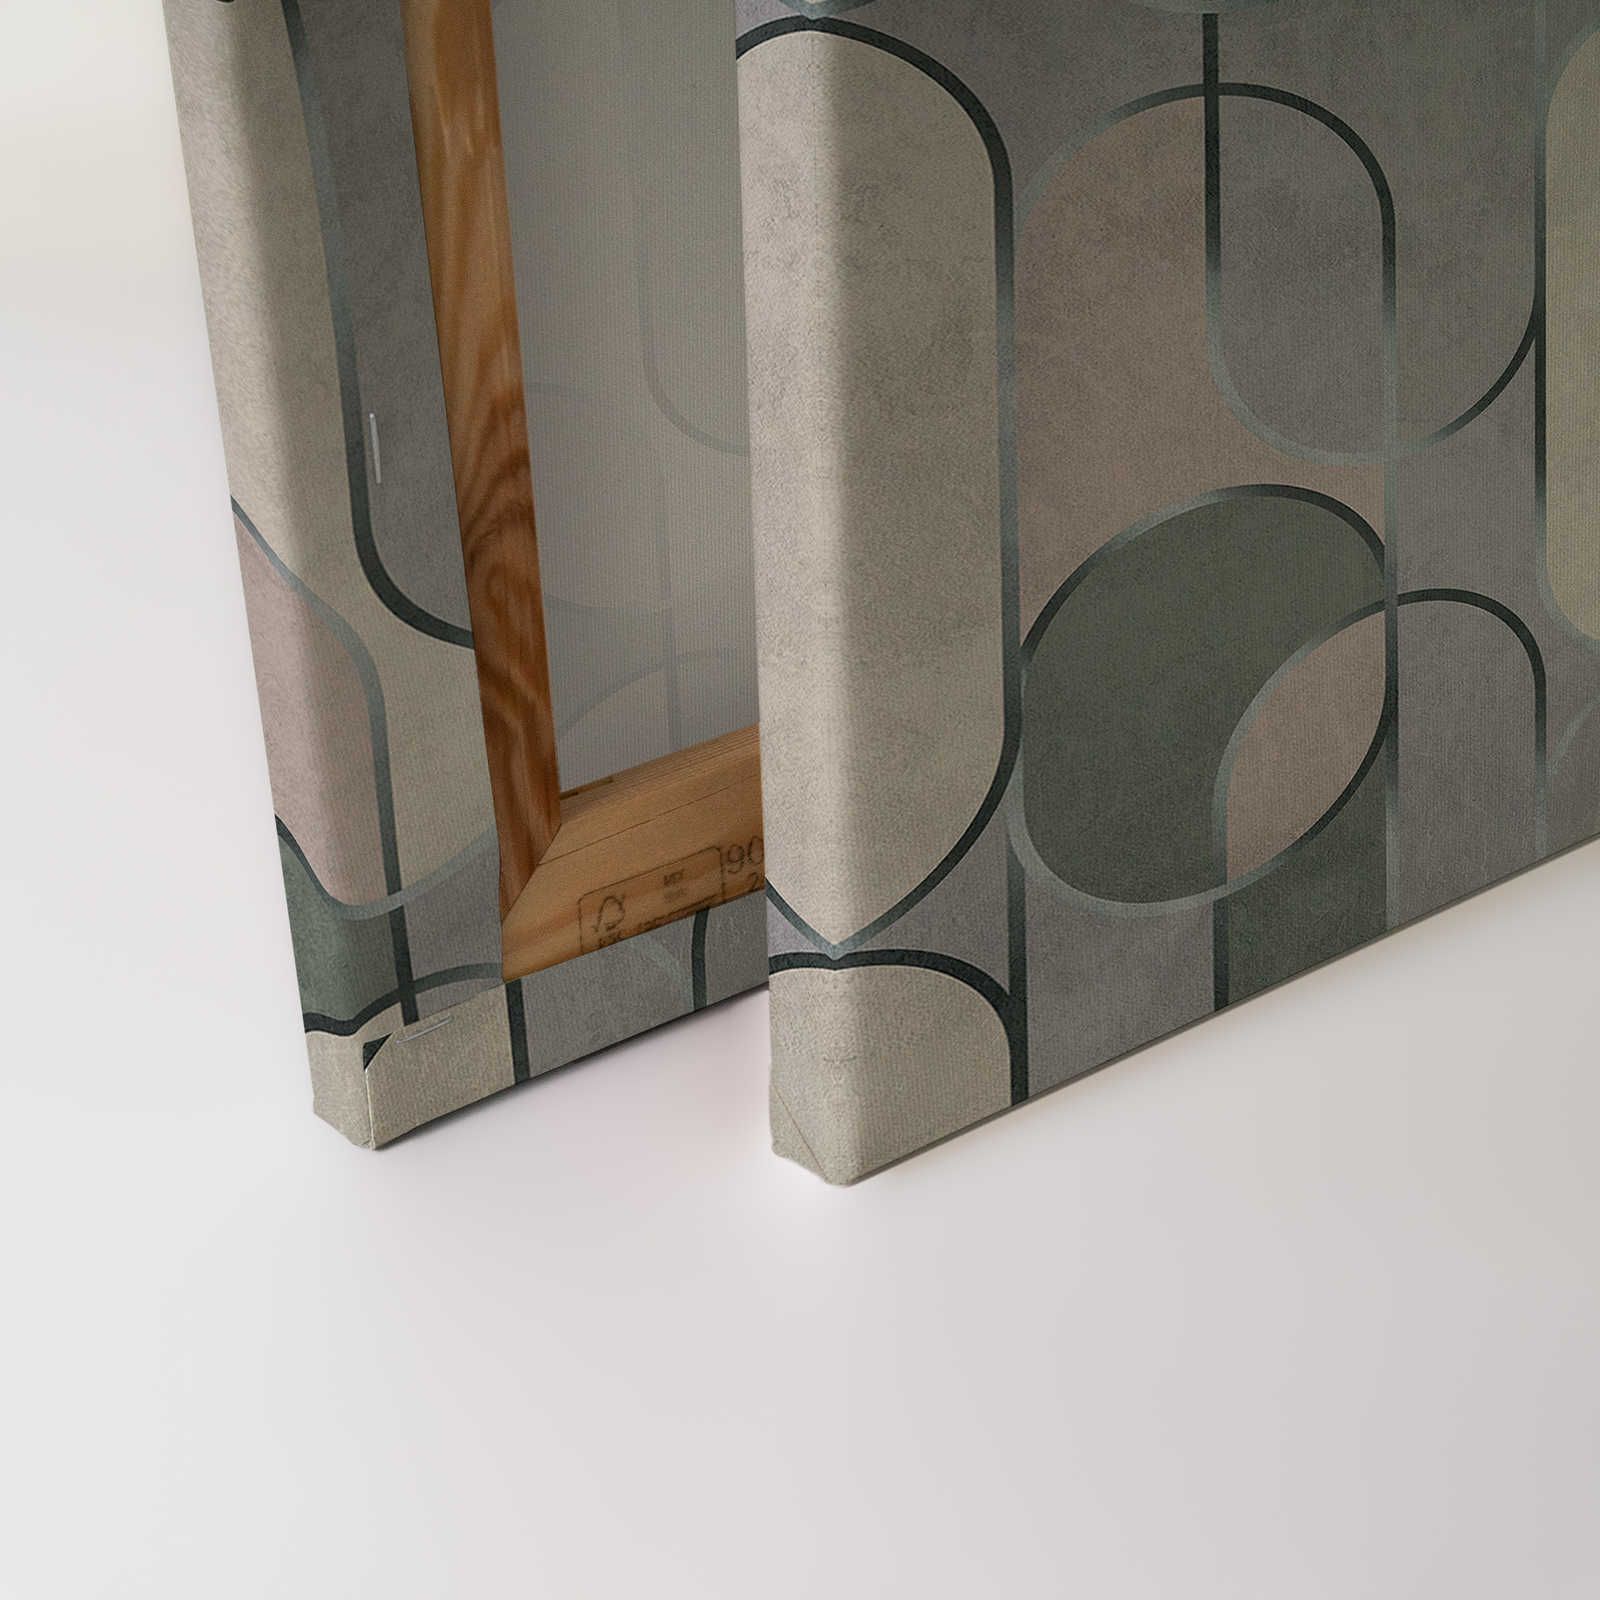             Ritz 2 - toile style rétro, gris & vert avec détails métalliques - 0,90 m x 0,60 m
        